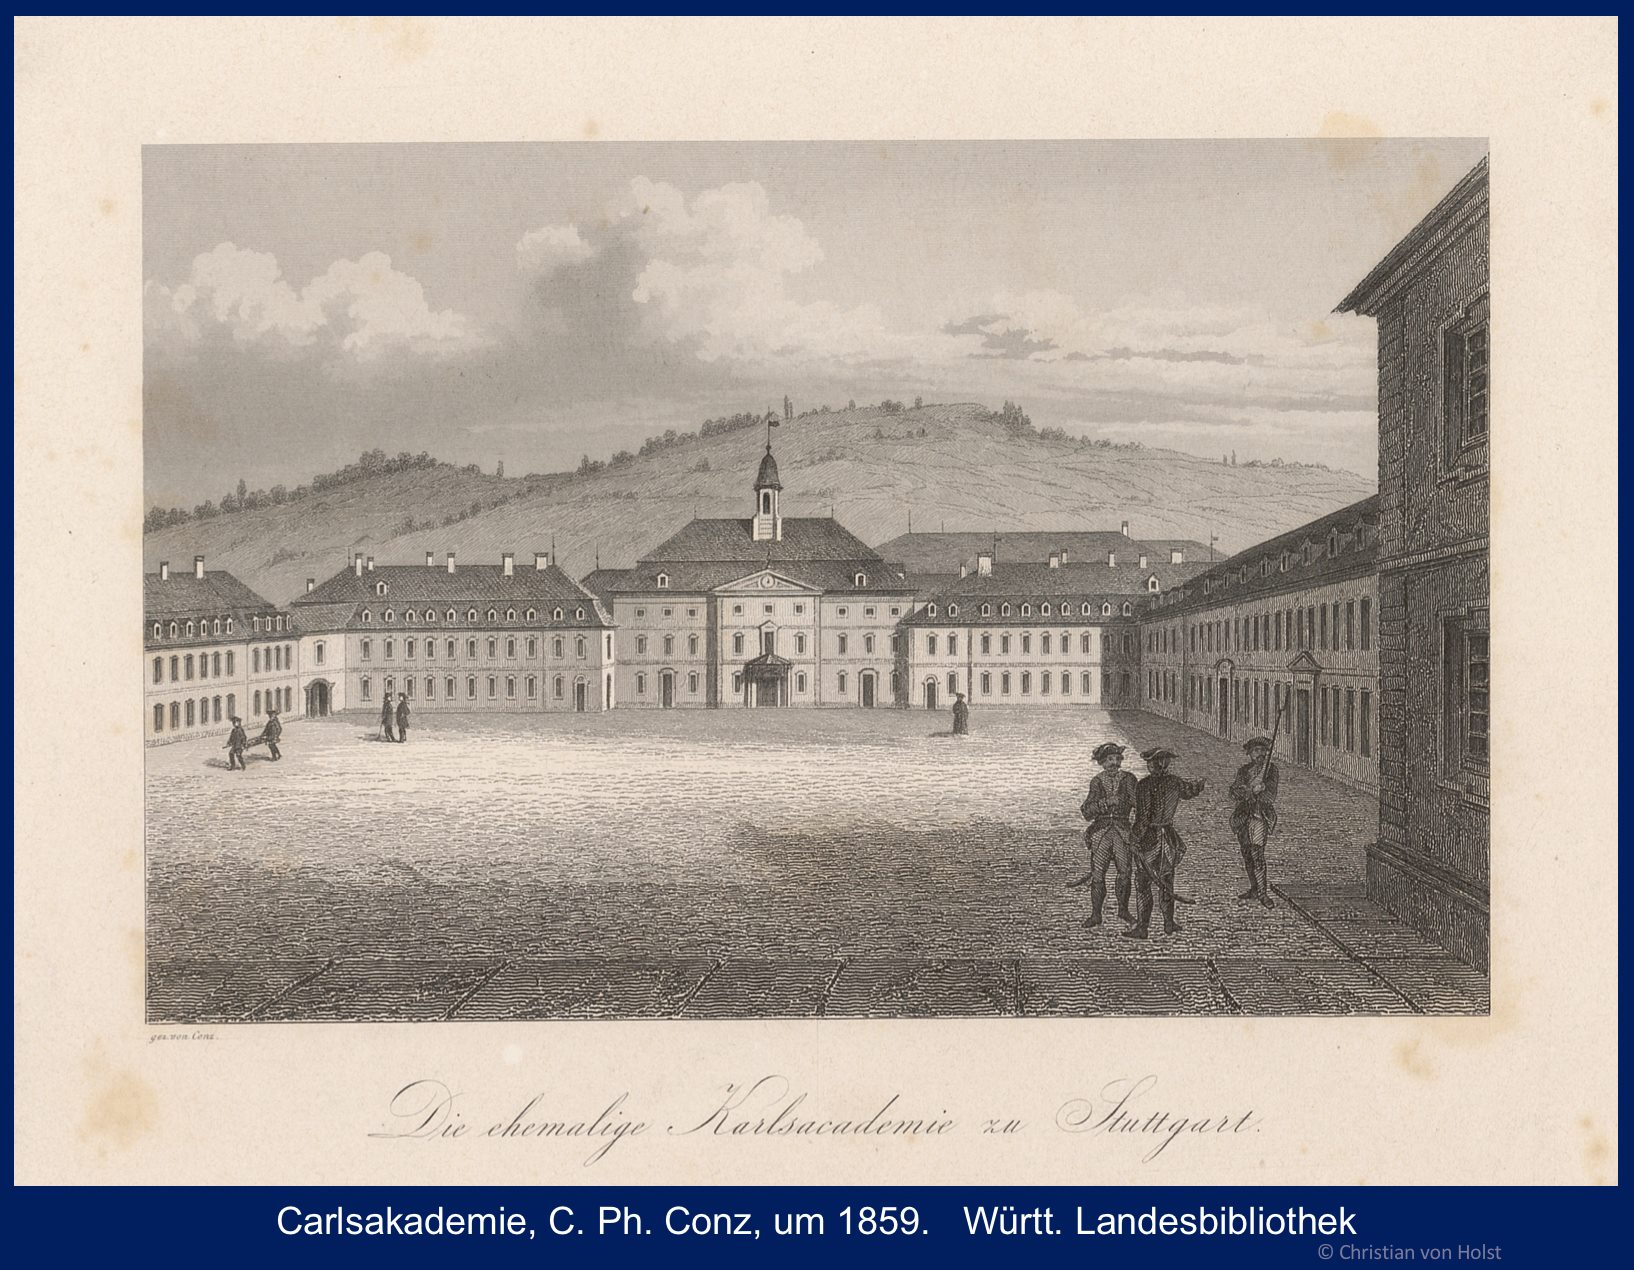 Carlsakademie: Schlüsselbau im Stadtbild Stuttgarts: Innenhof um 1859 von C. Ph. Conz